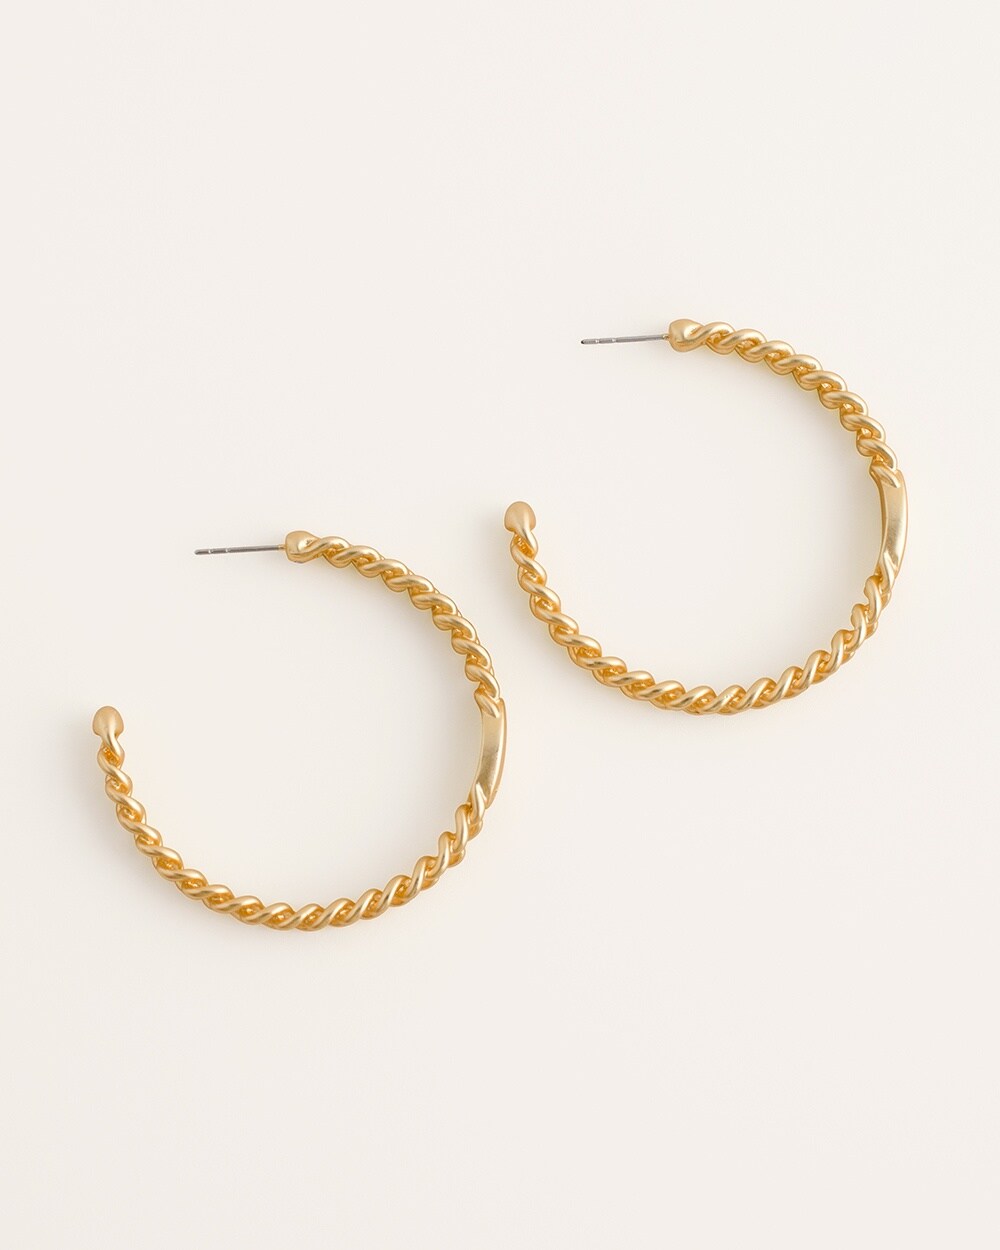 Goldtone Twisted Hoop Earrings